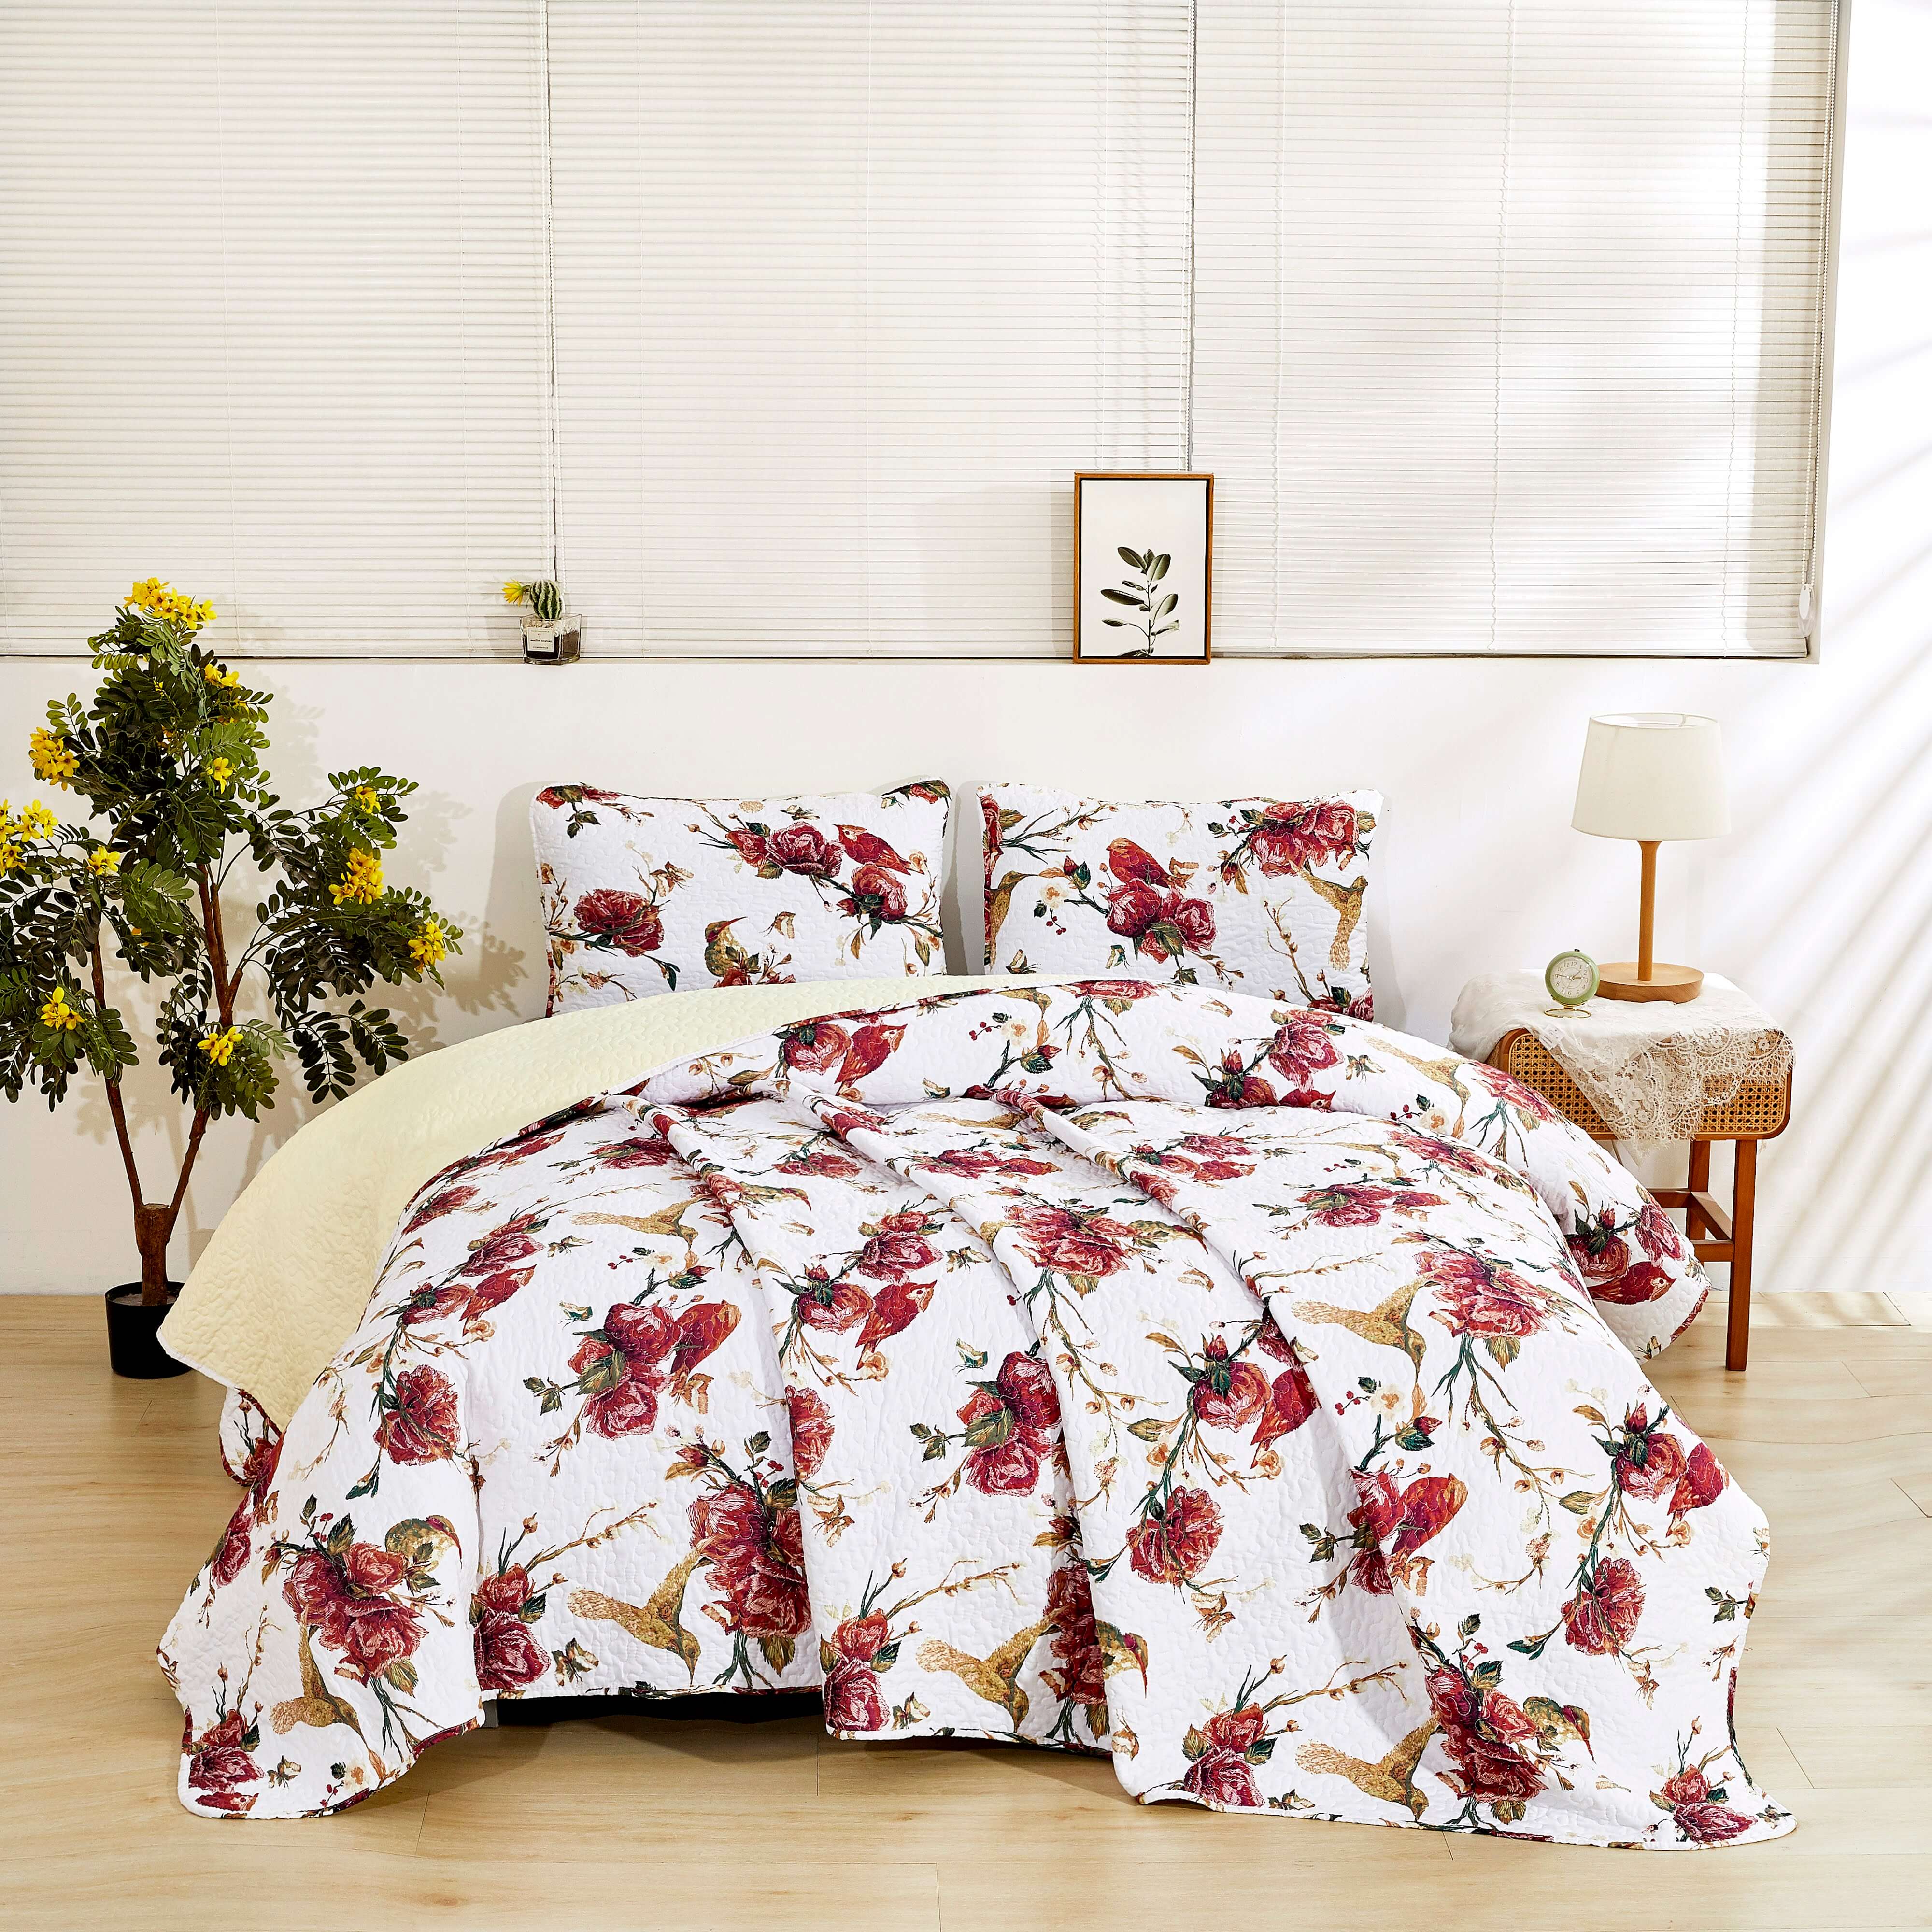 Tache Vintage Rose Garden Floral Hummingbirds Burgundy White Reversible Quilt Bedspread Bedding Comforter Coverlet Set